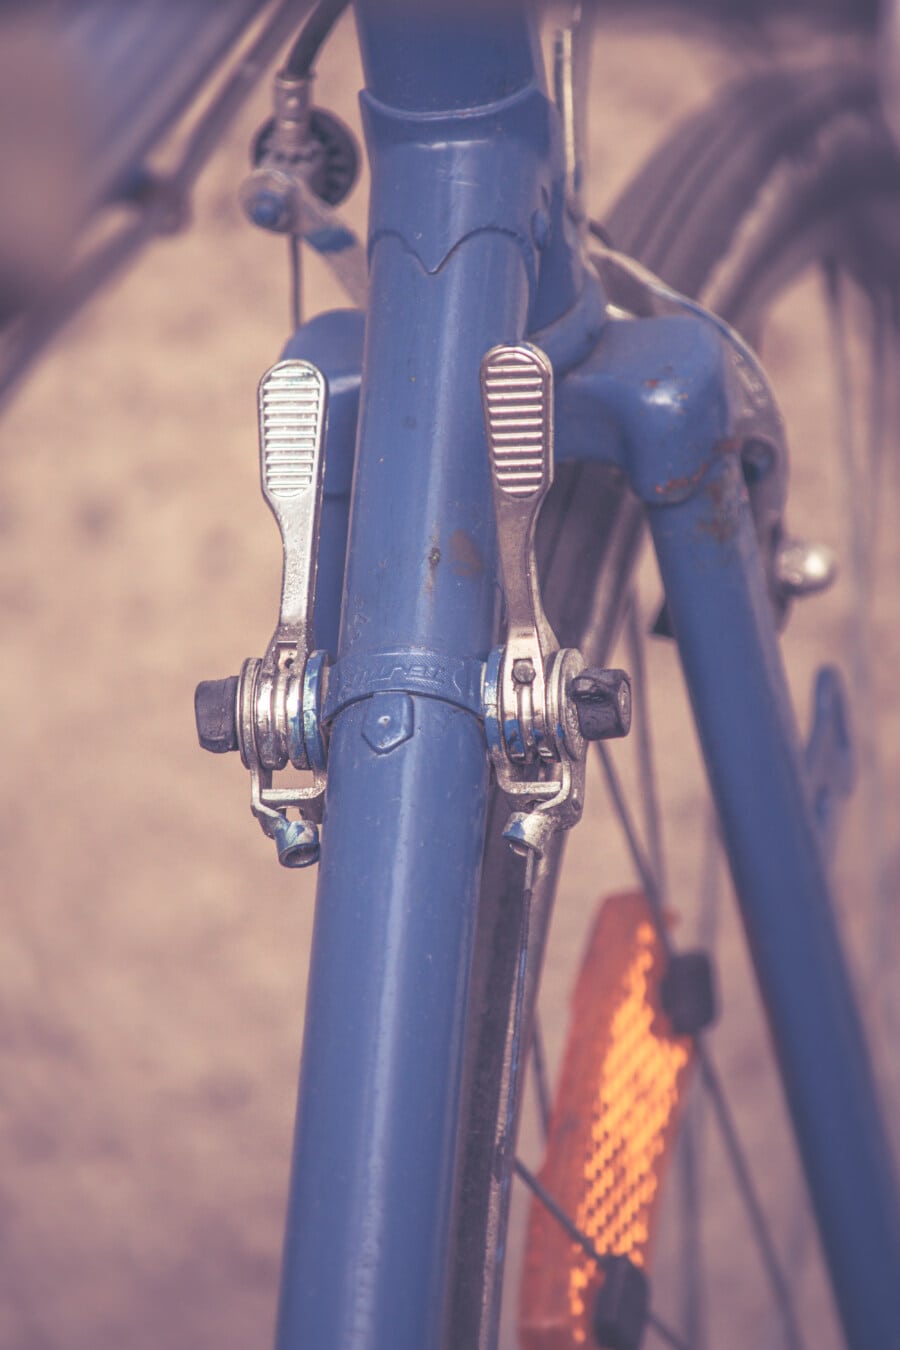 gearshift, ký-đóng, xe đạp, phong cách cũ, cuộc hái nho, chi tiết, công nghệ, thép, ngành công nghiệp, xe